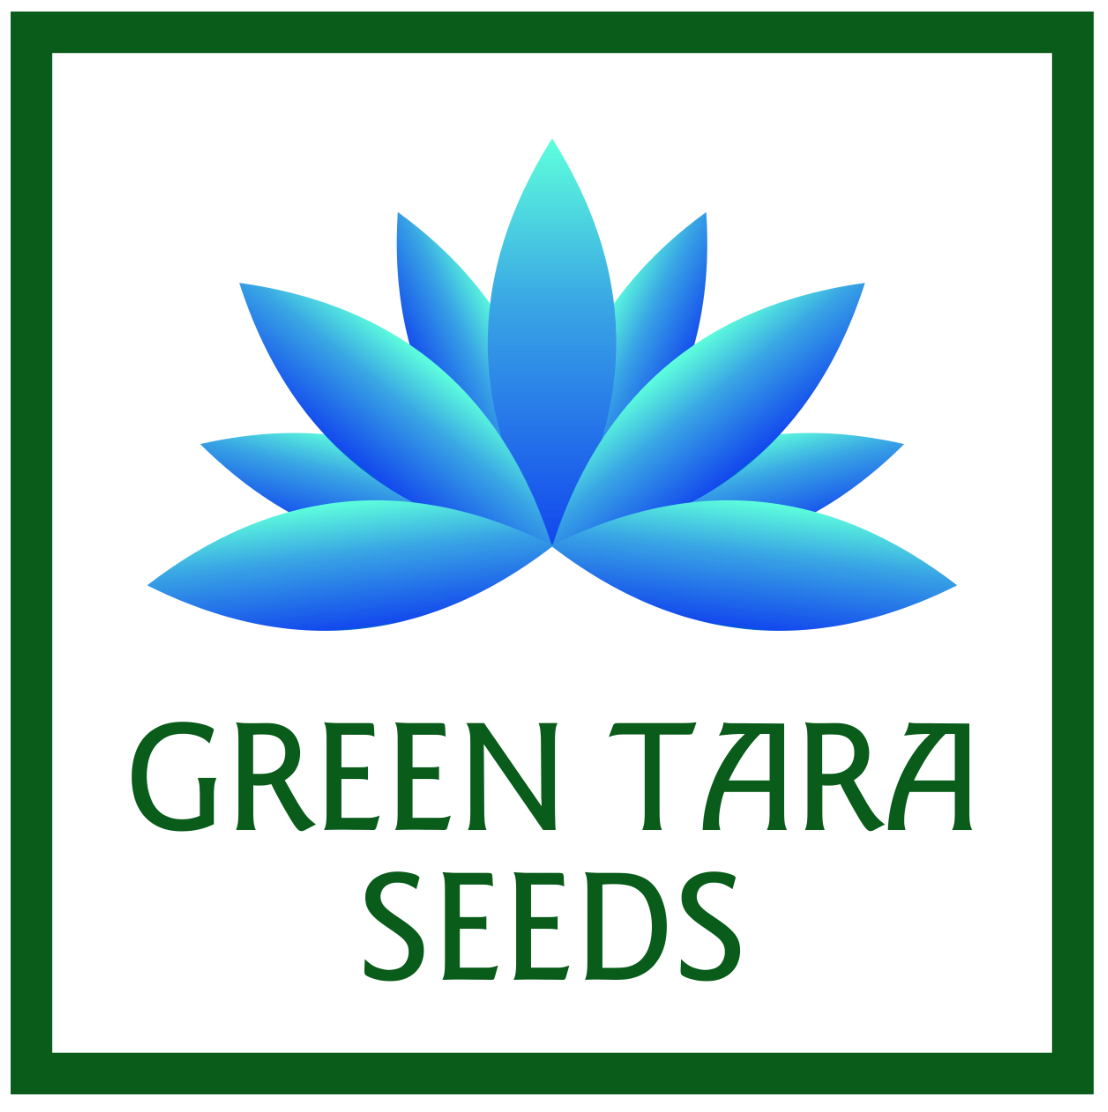 Green Tara Seeds